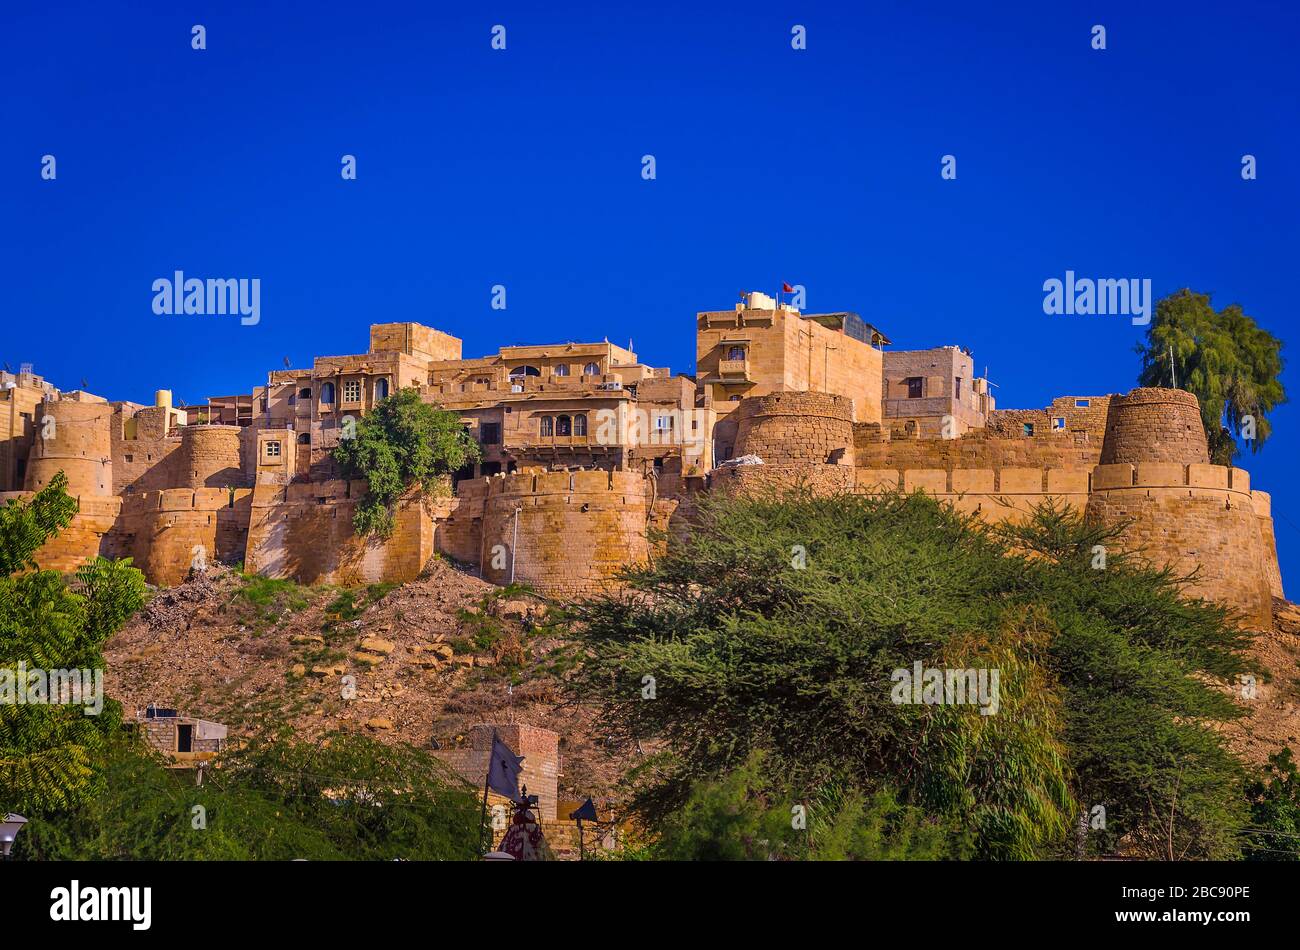 JAISALMER, RAJASTHAN, INDIA - 29 NOVEMBRE 2019: Vista panoramica del Forte d'Oro di Jaisalmer è il secondo forte più vecchio in Rajasthan, India. Foto Stock